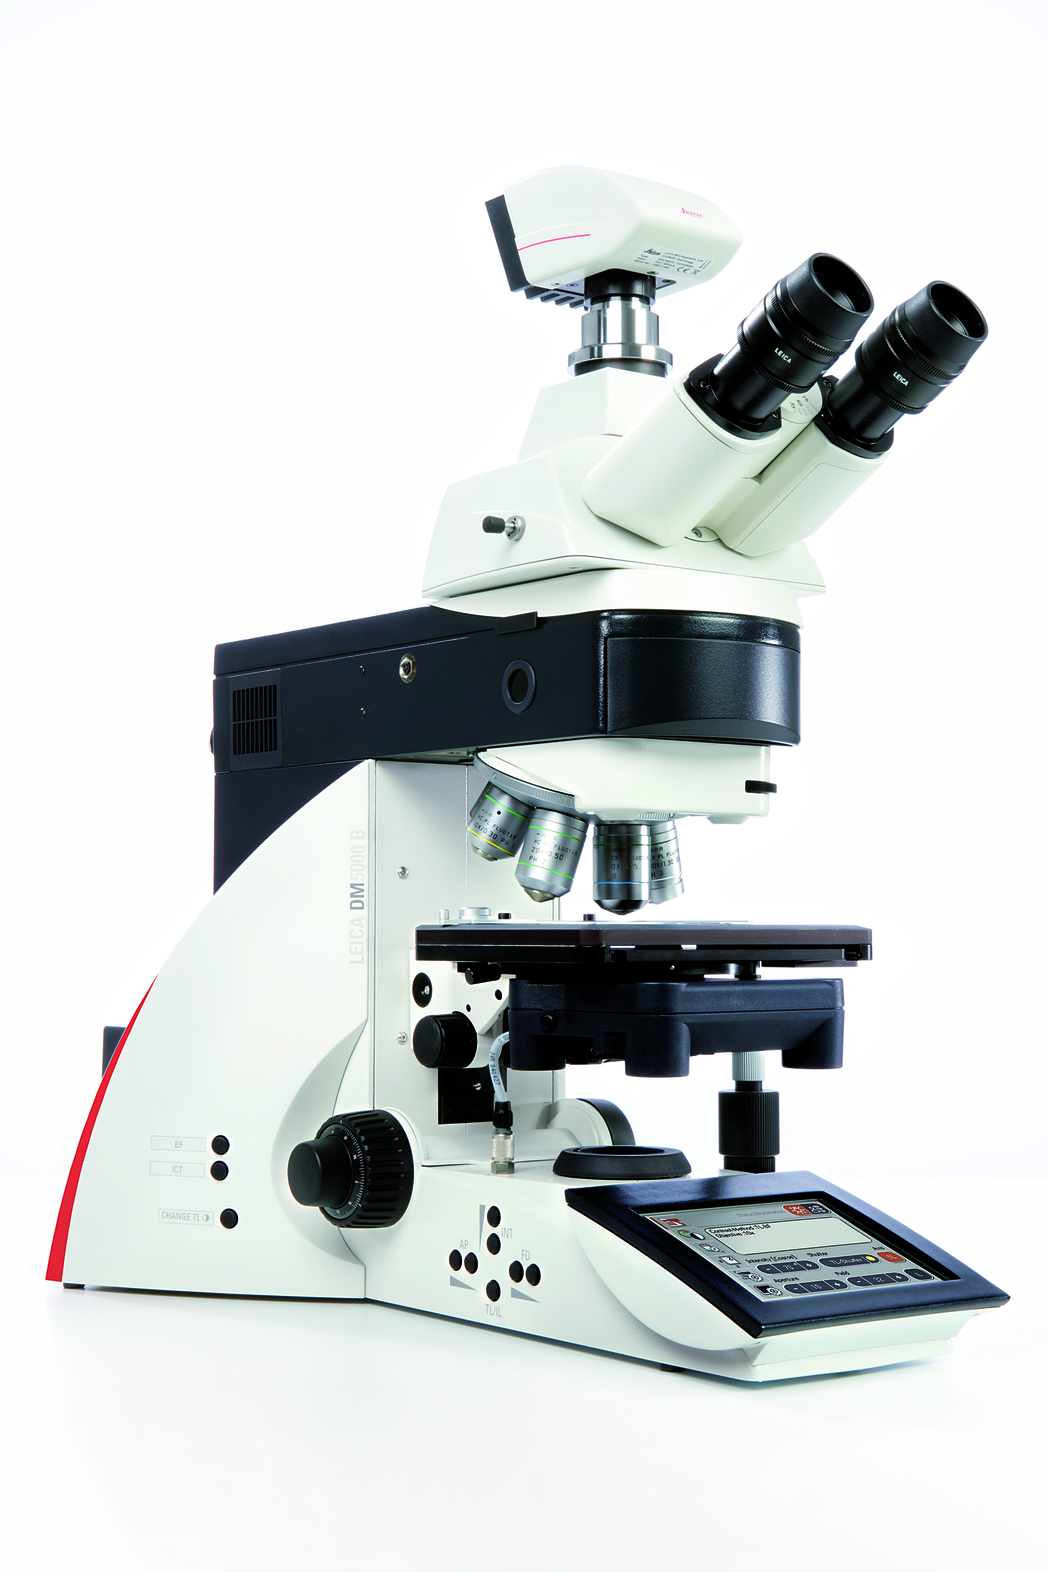 Il microscopio Leica DM5000 B, automatizzato e intuitivo, è l'ideale per studi morfologici e per la ricerca su cellule vive ed è facile da usare